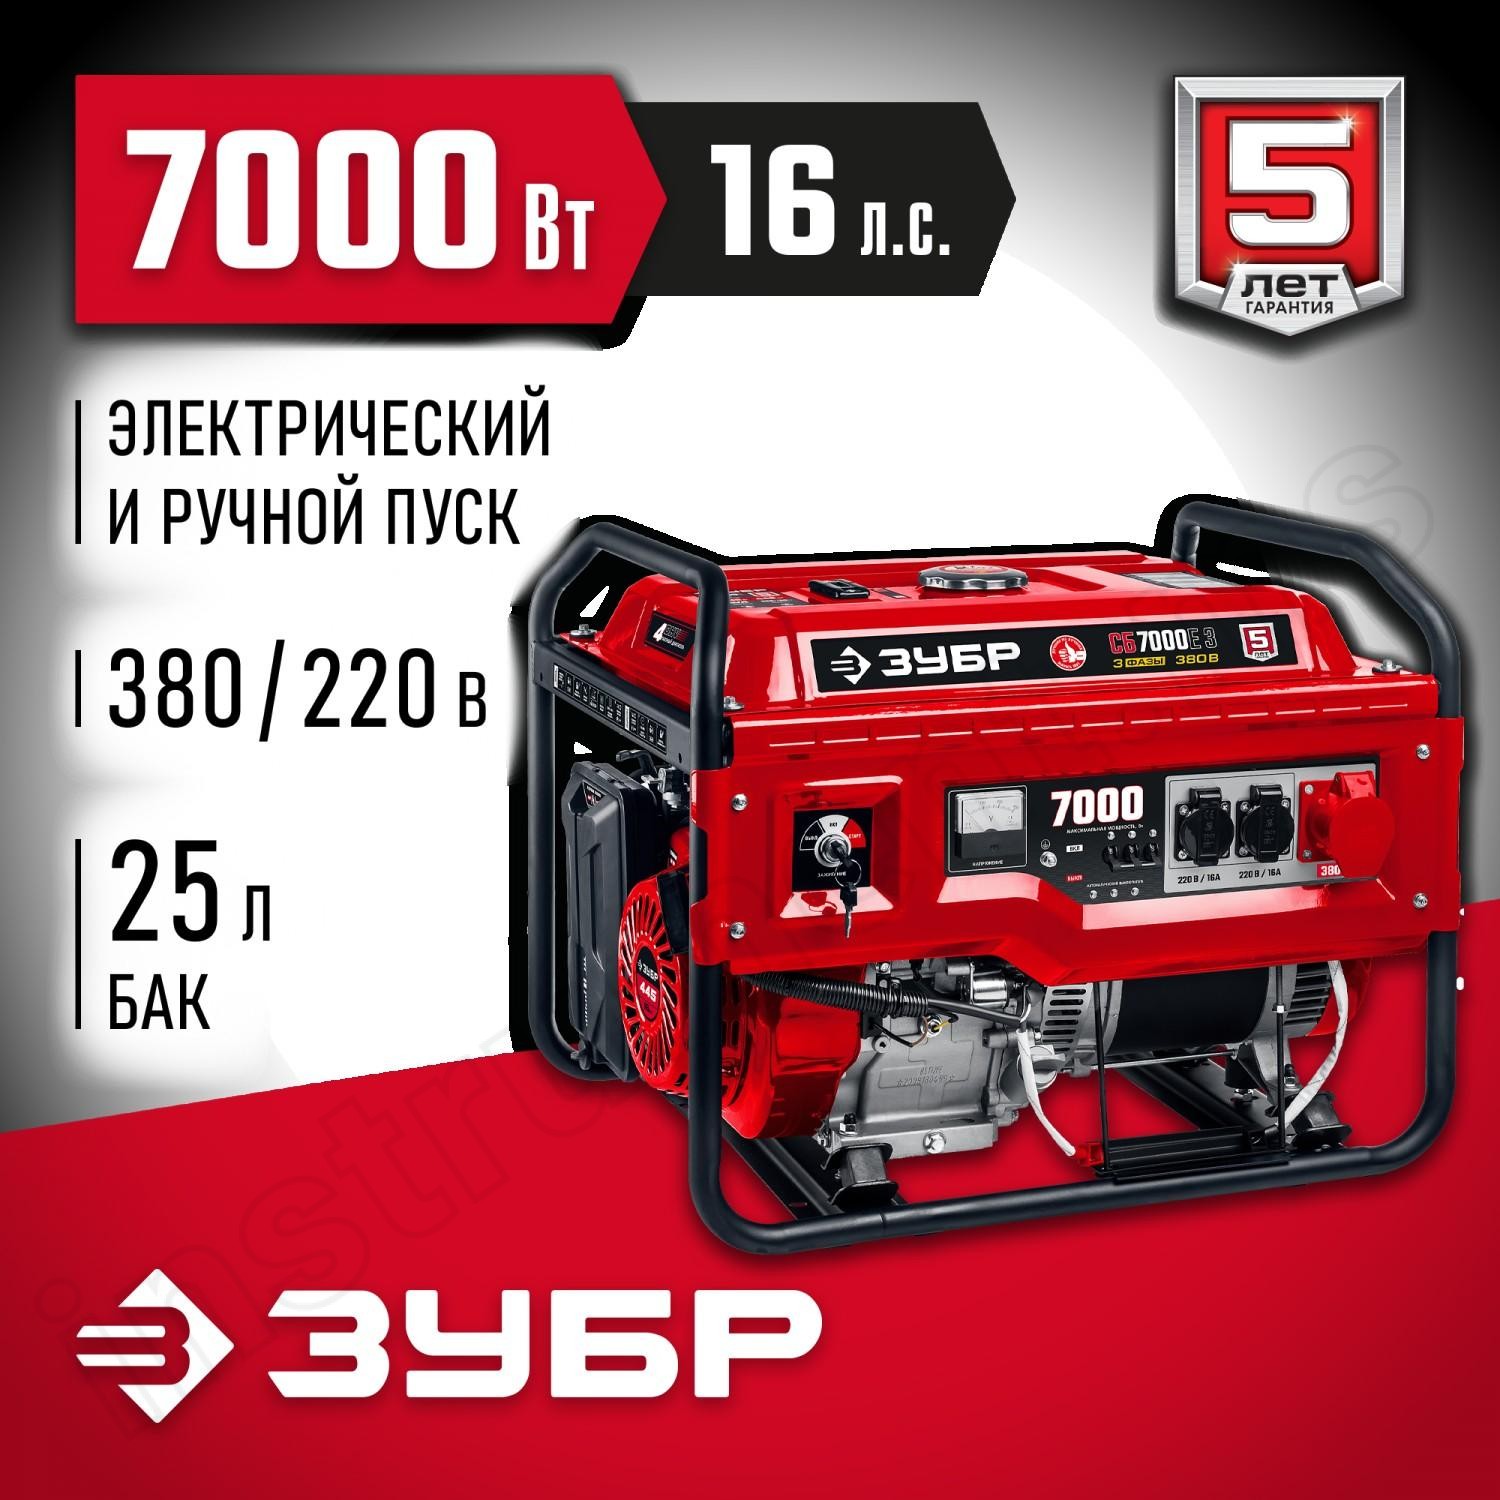 ЗУБР  7000 Вт, 380 / 220 В, бензиновый генератор с электростартером (СБ-7000Е-3) - фото 1